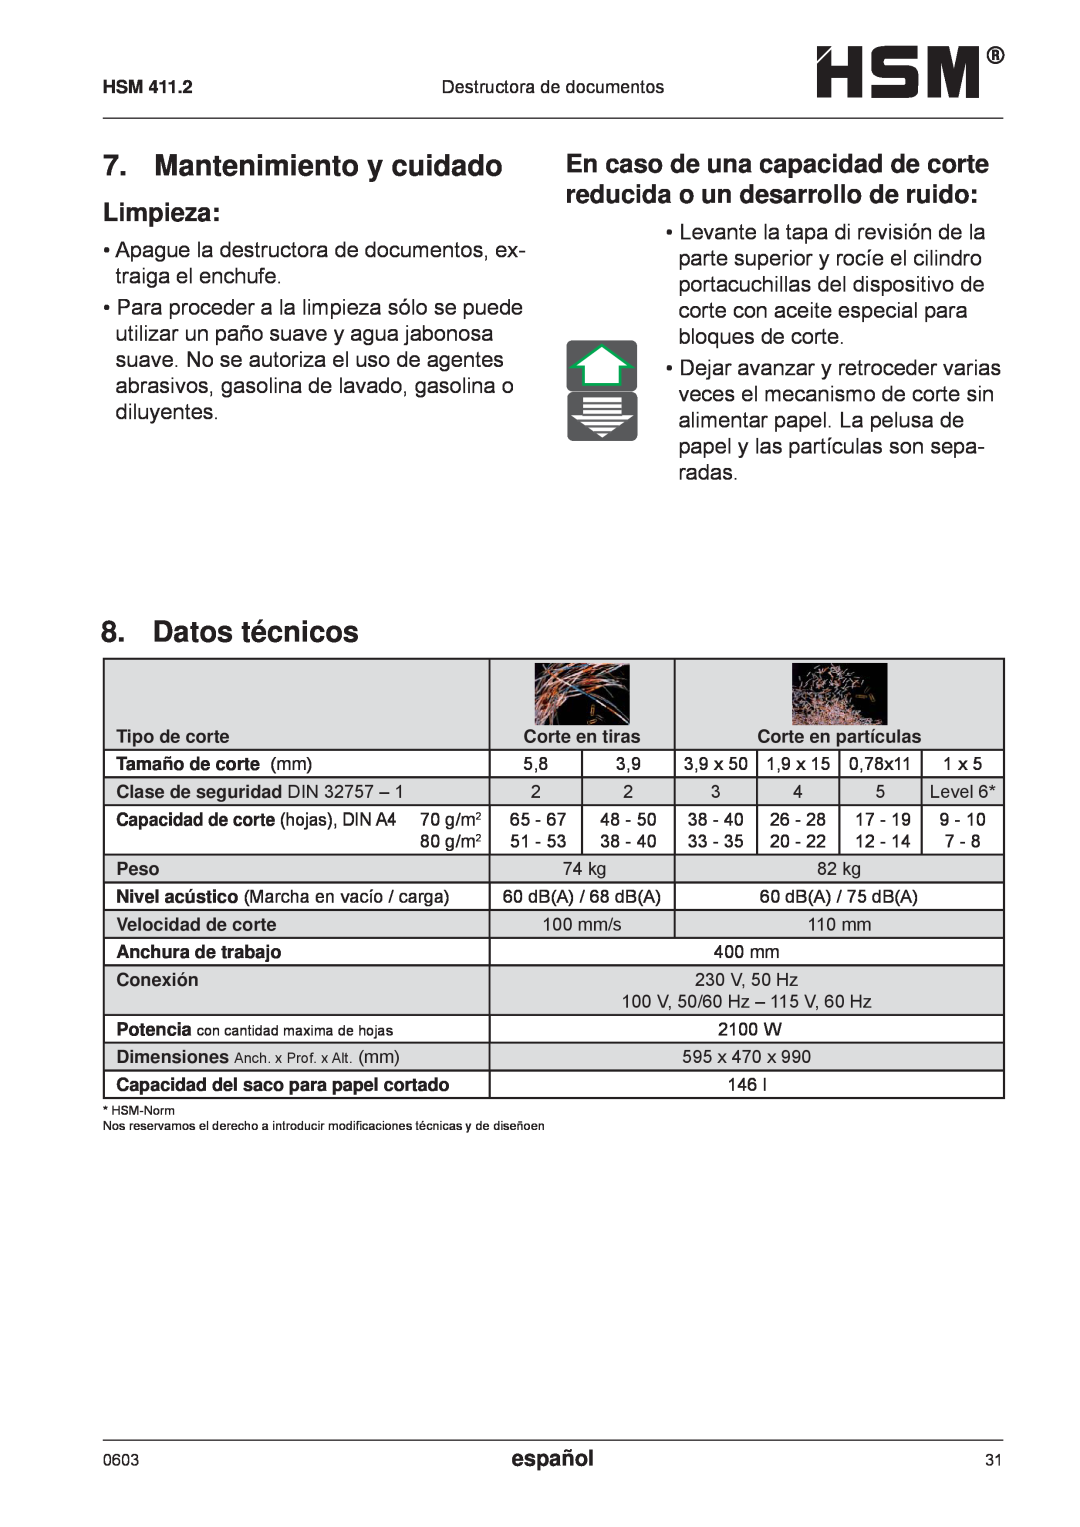 HSM HSM 411.2 operating instructions Mantenimiento y cuidado, Datos técnicos, Limpieza, español 